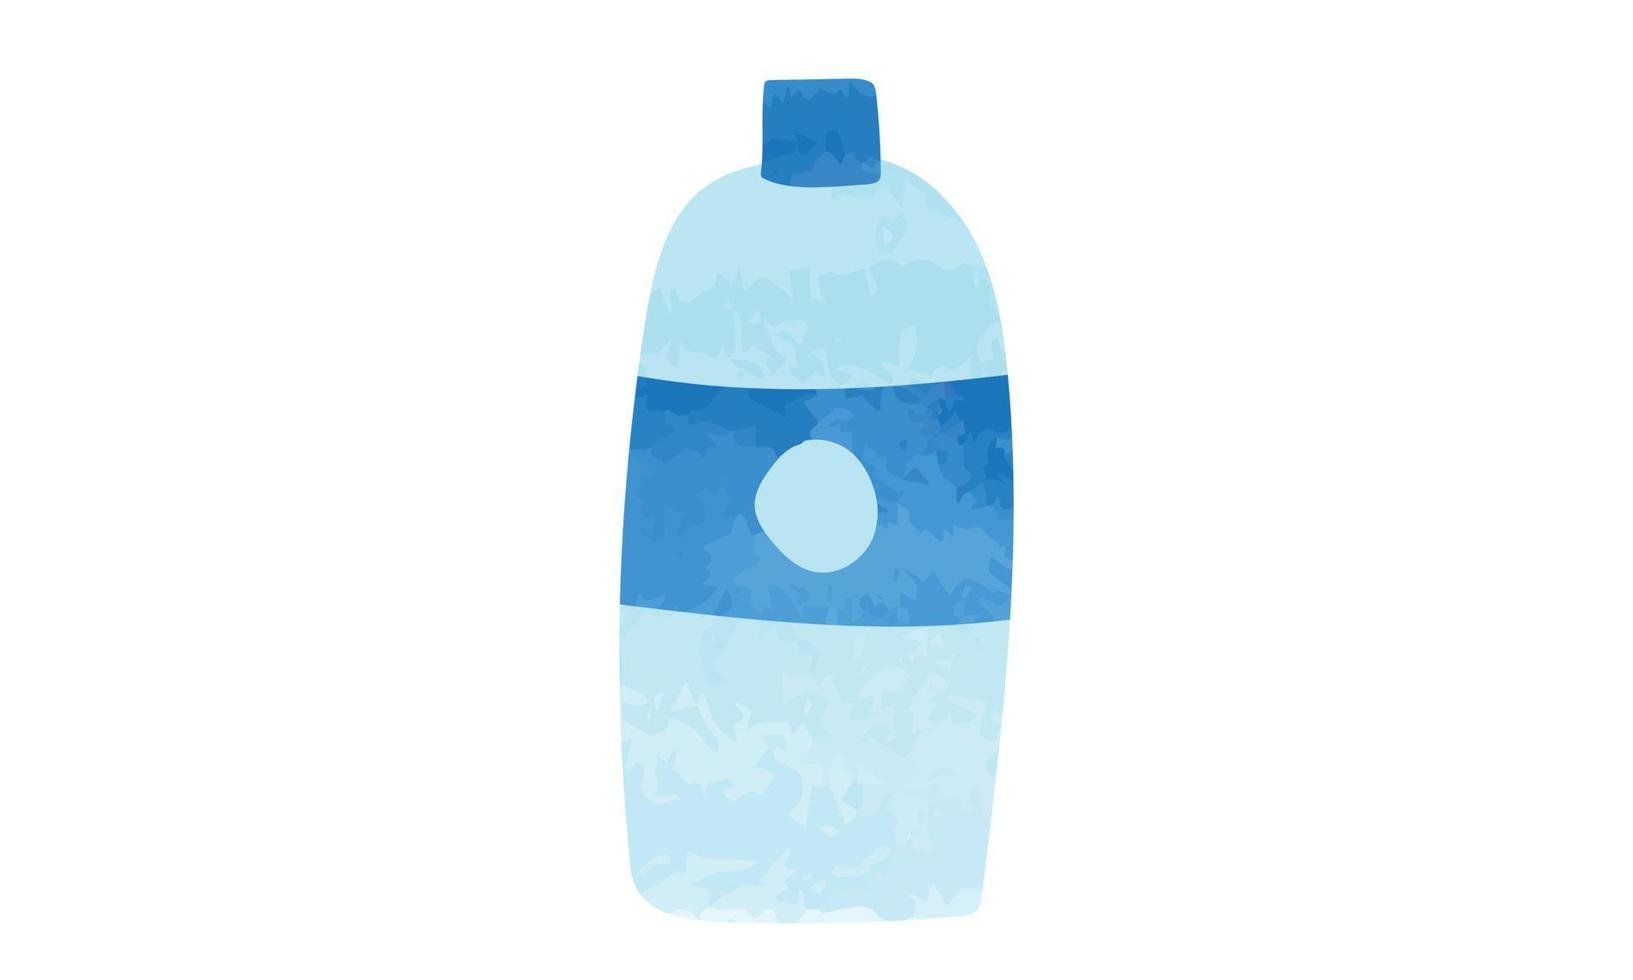 ilustração em vetor estilo aquarela de garrafa de água minimalista isolada no fundo branco. garrafa de água aquarela simples